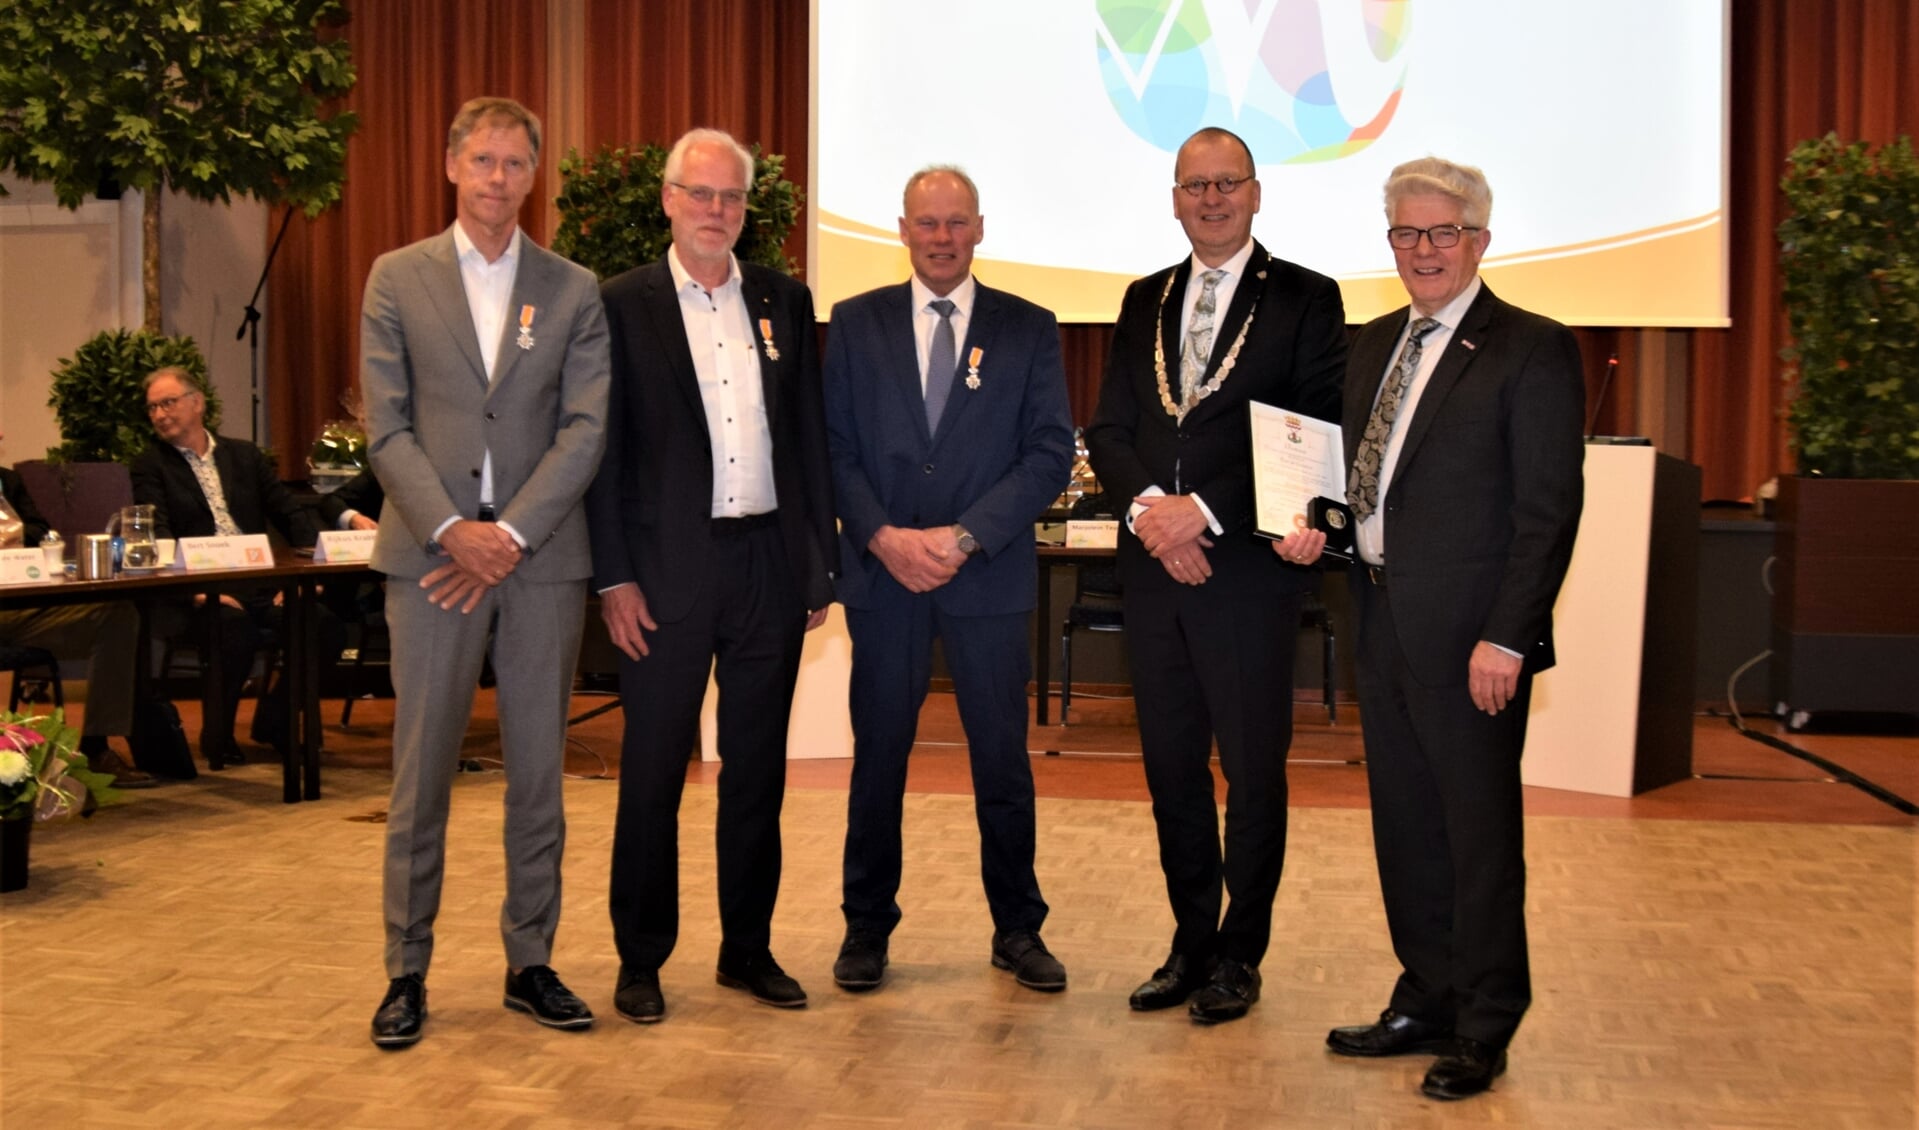 • De gedecoreerden, met v.l.n.r. Erik Jonker, Jan Lock, Ad van Rees, burgemeester Theo Segers en Piet de Gruijter.